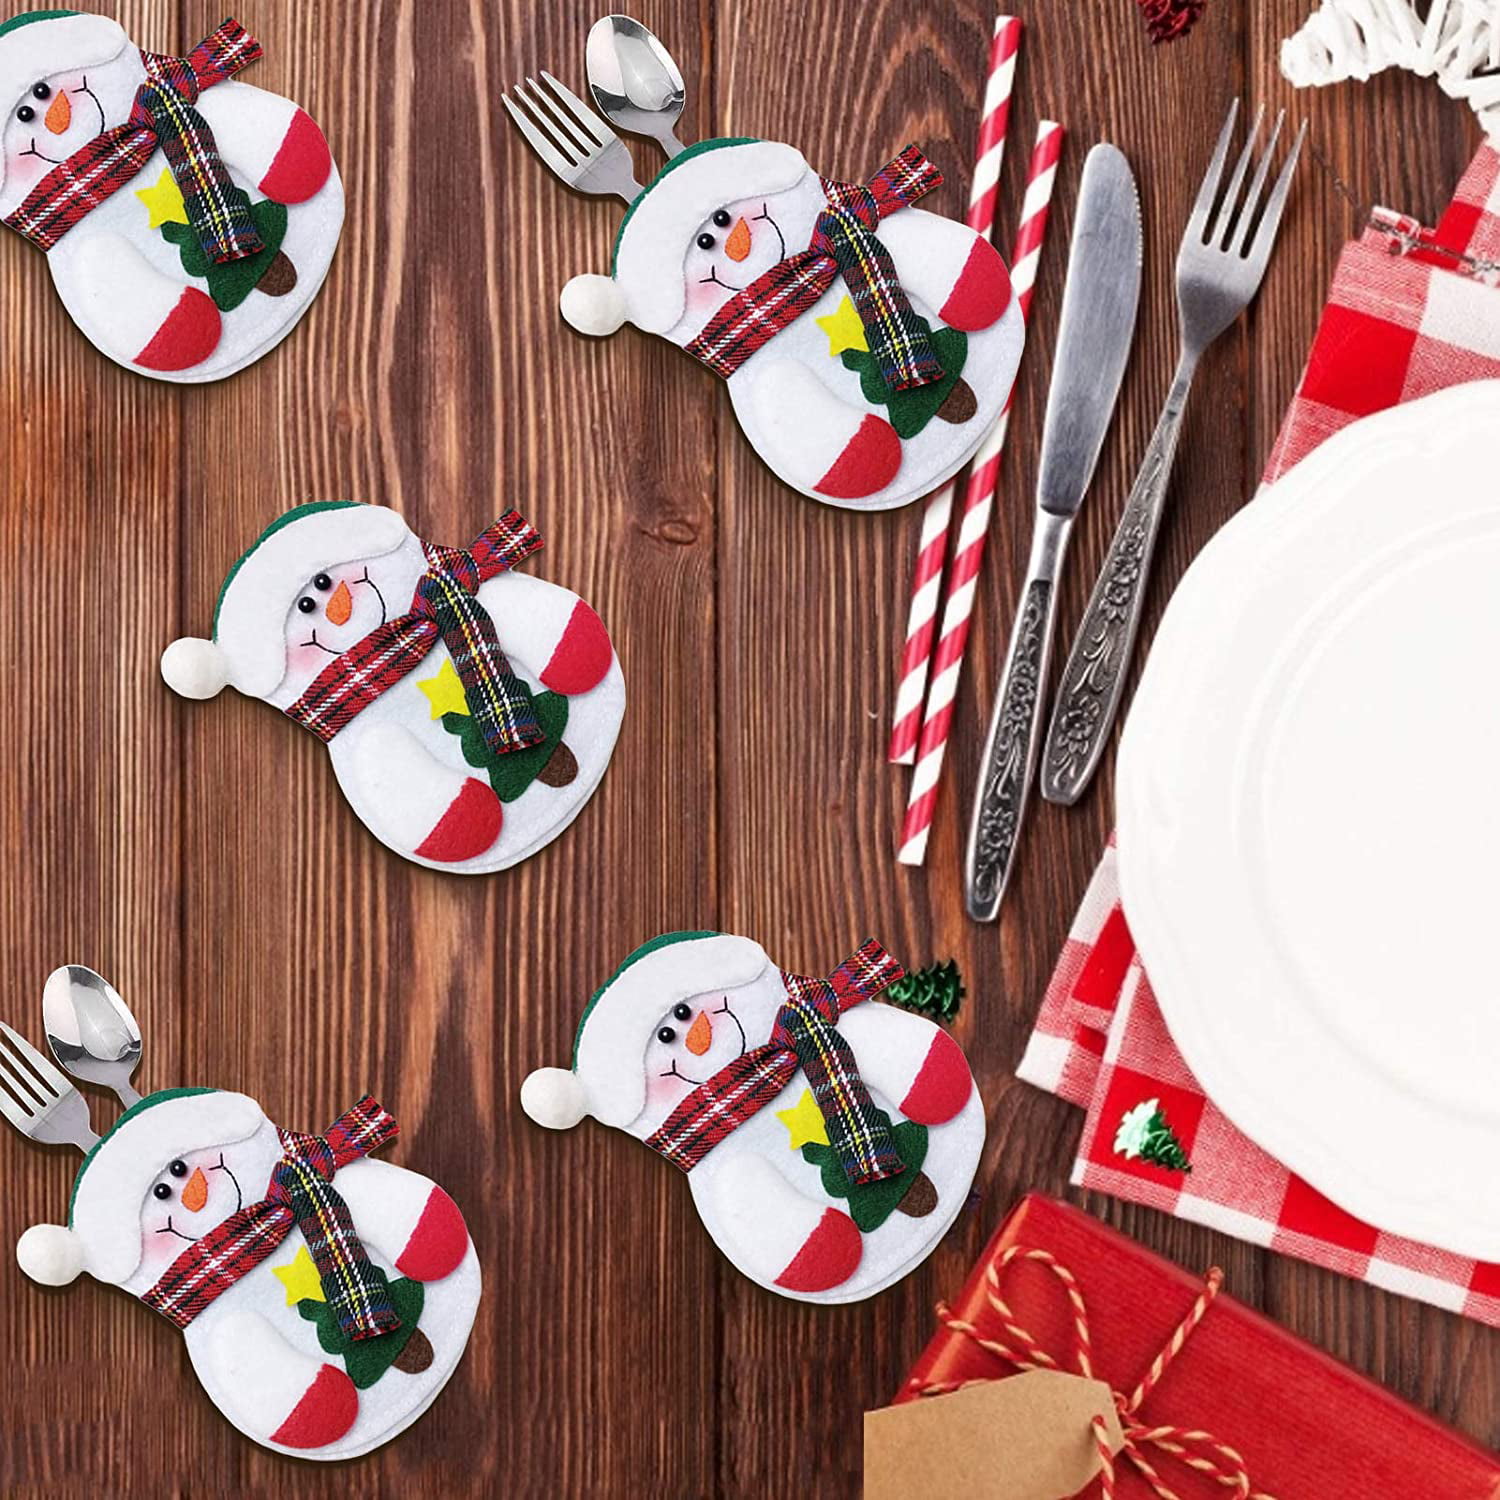 Santa Claus Xmas Cutlery Tableware Spoon Set Decor Suit Holder Pockets Bags vi 